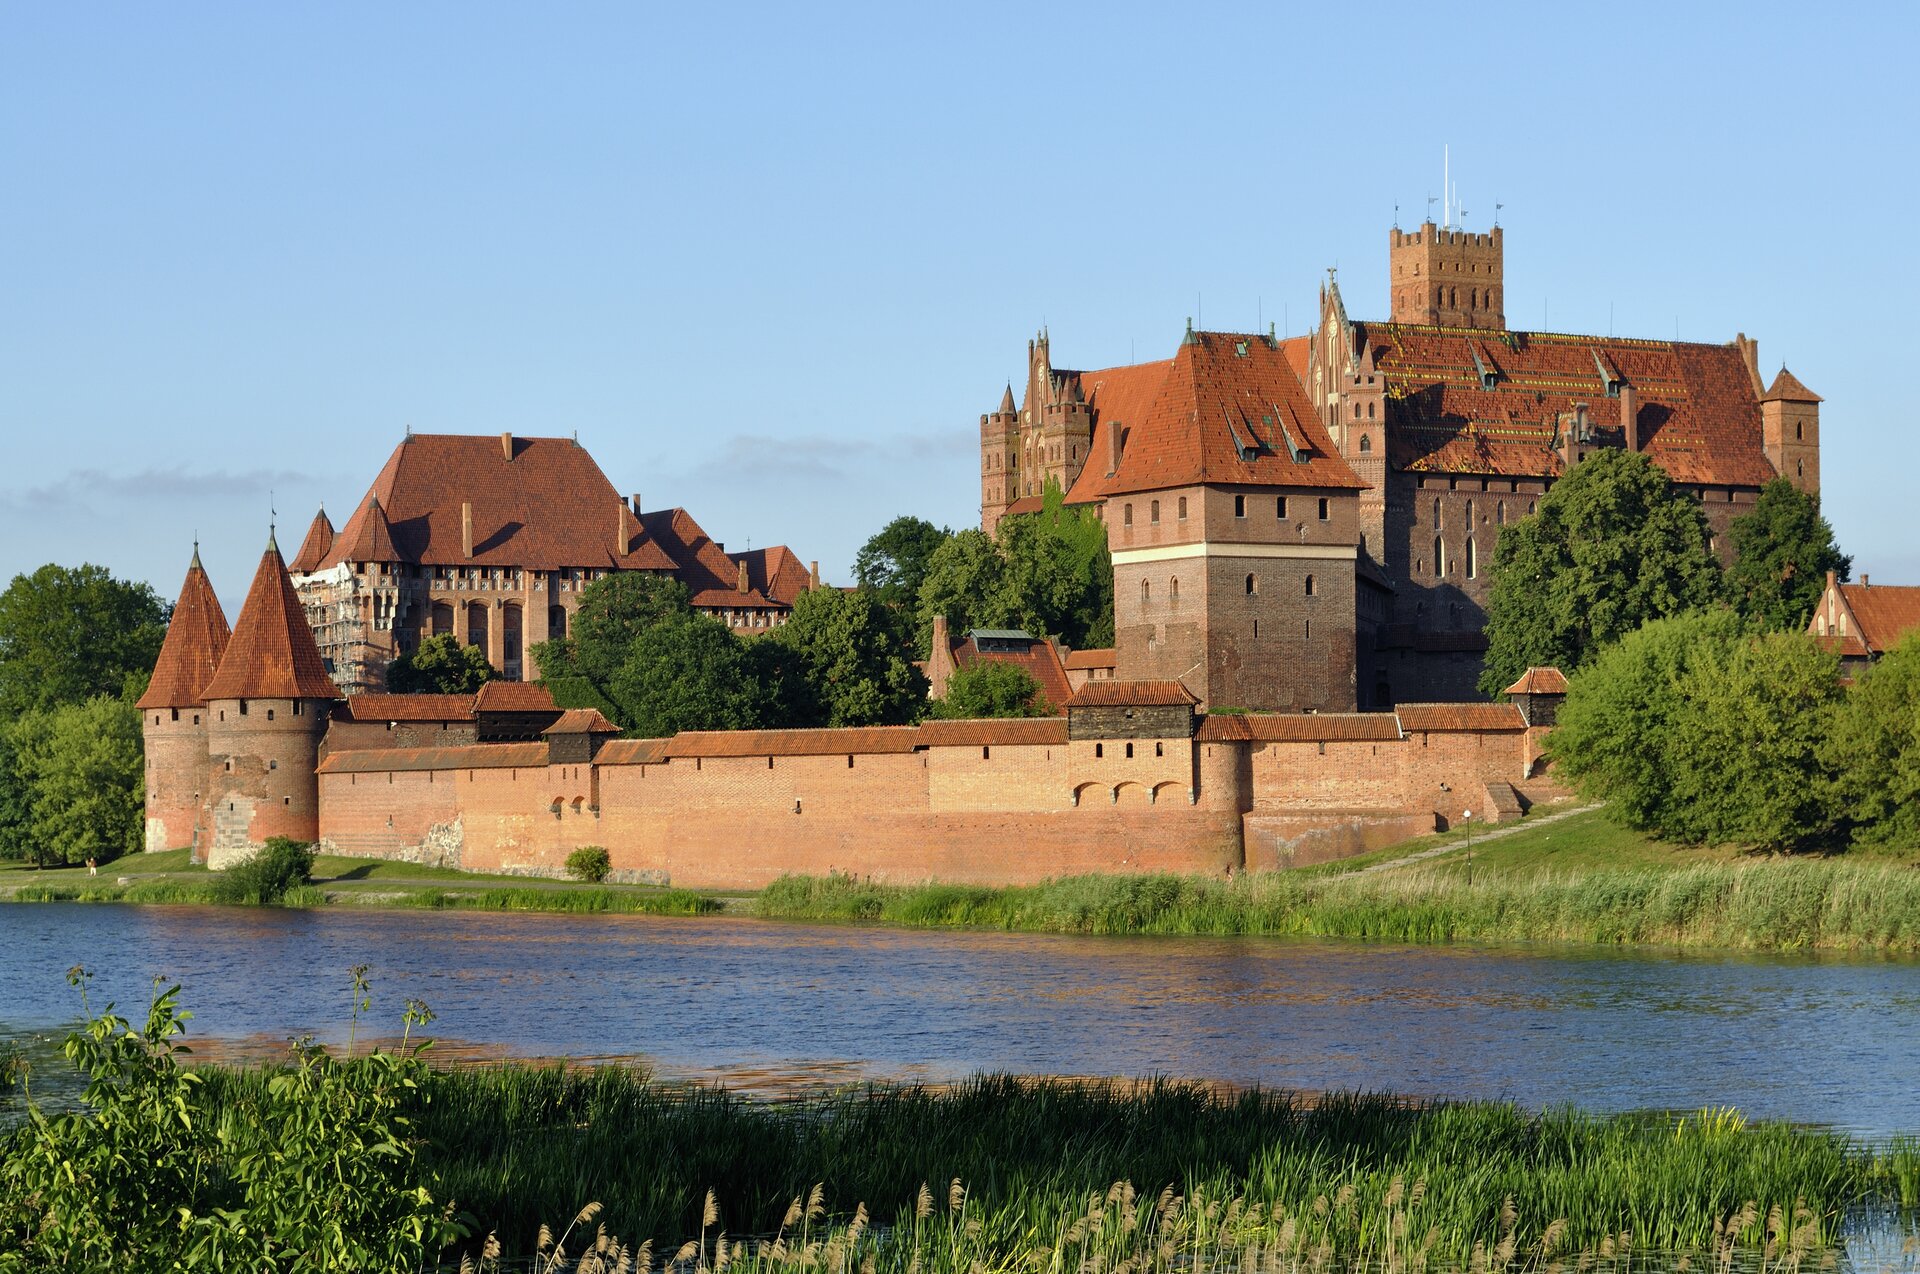 Na zdjęciu rozbudowany zamek z czerwonej cegły, otoczony murem, położony nad rzeką.